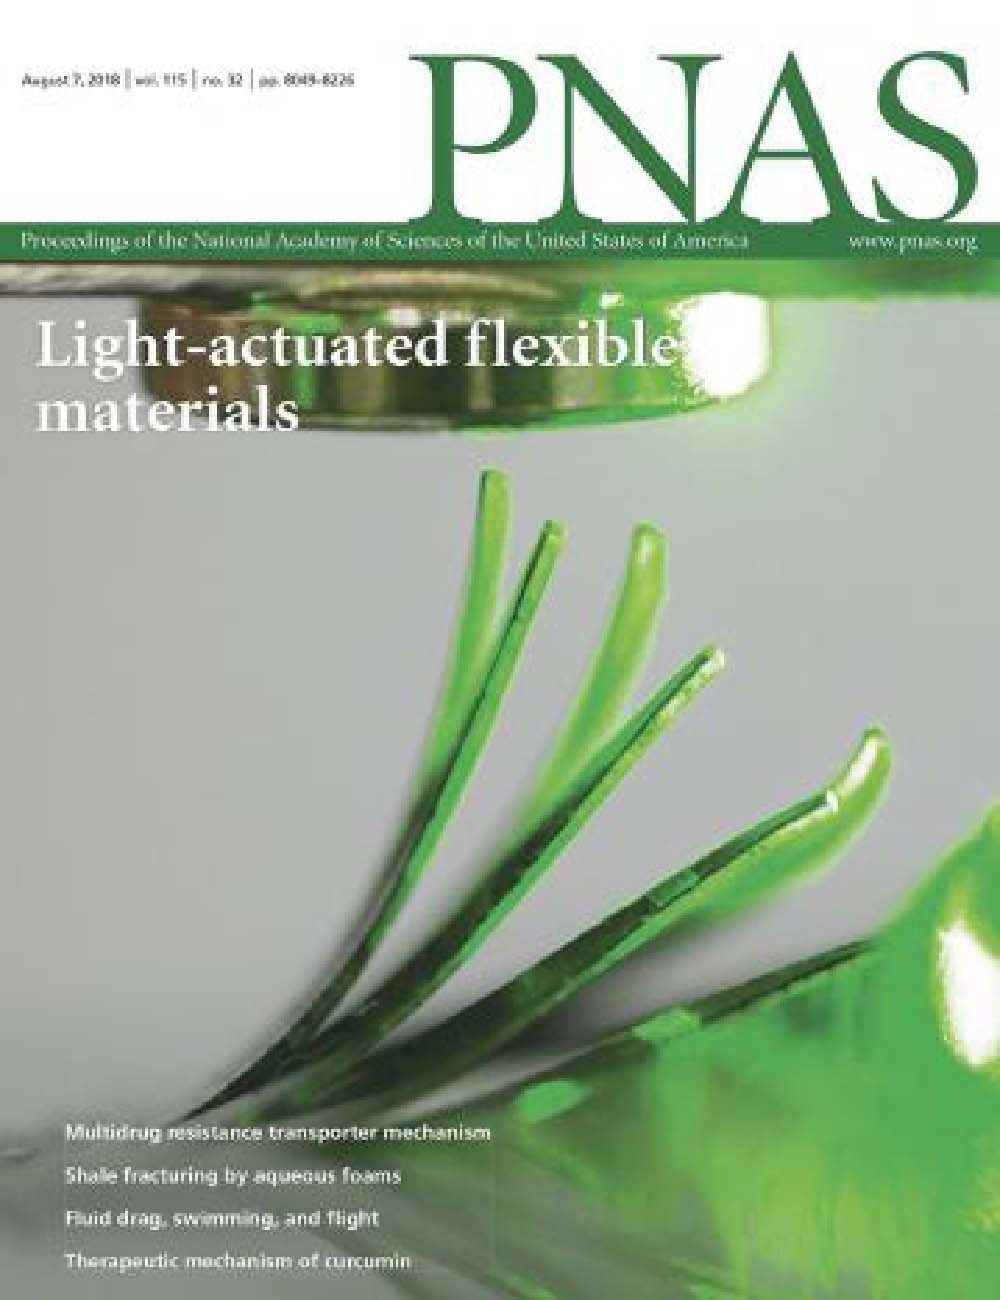 2018 Cover of PNAS, Volume 115, no. 32